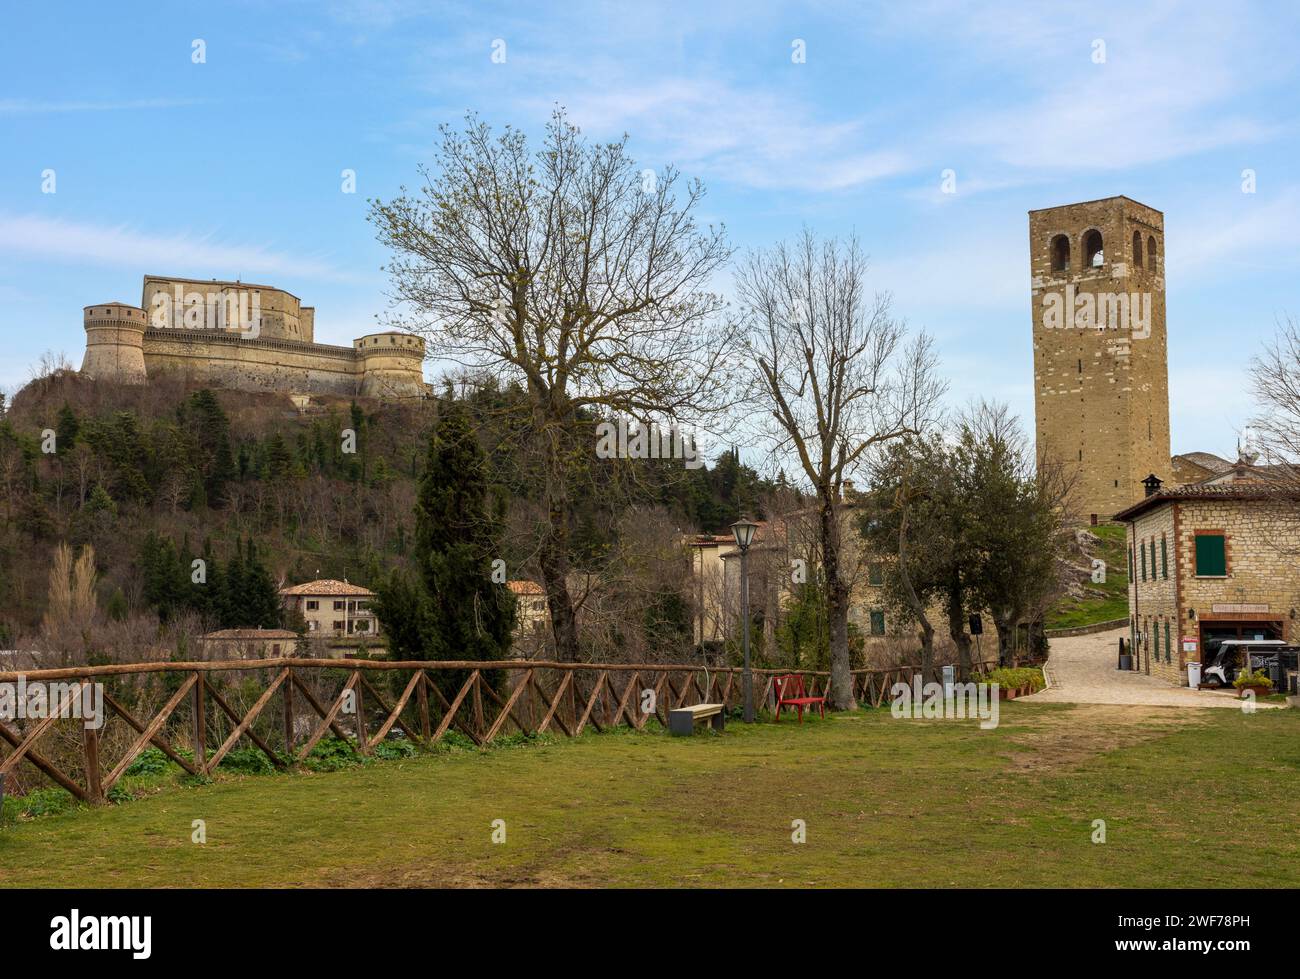 Le village médiéval perché de San Leo, province de Rimini, Emilie-Romagne, Italie. Banque D'Images